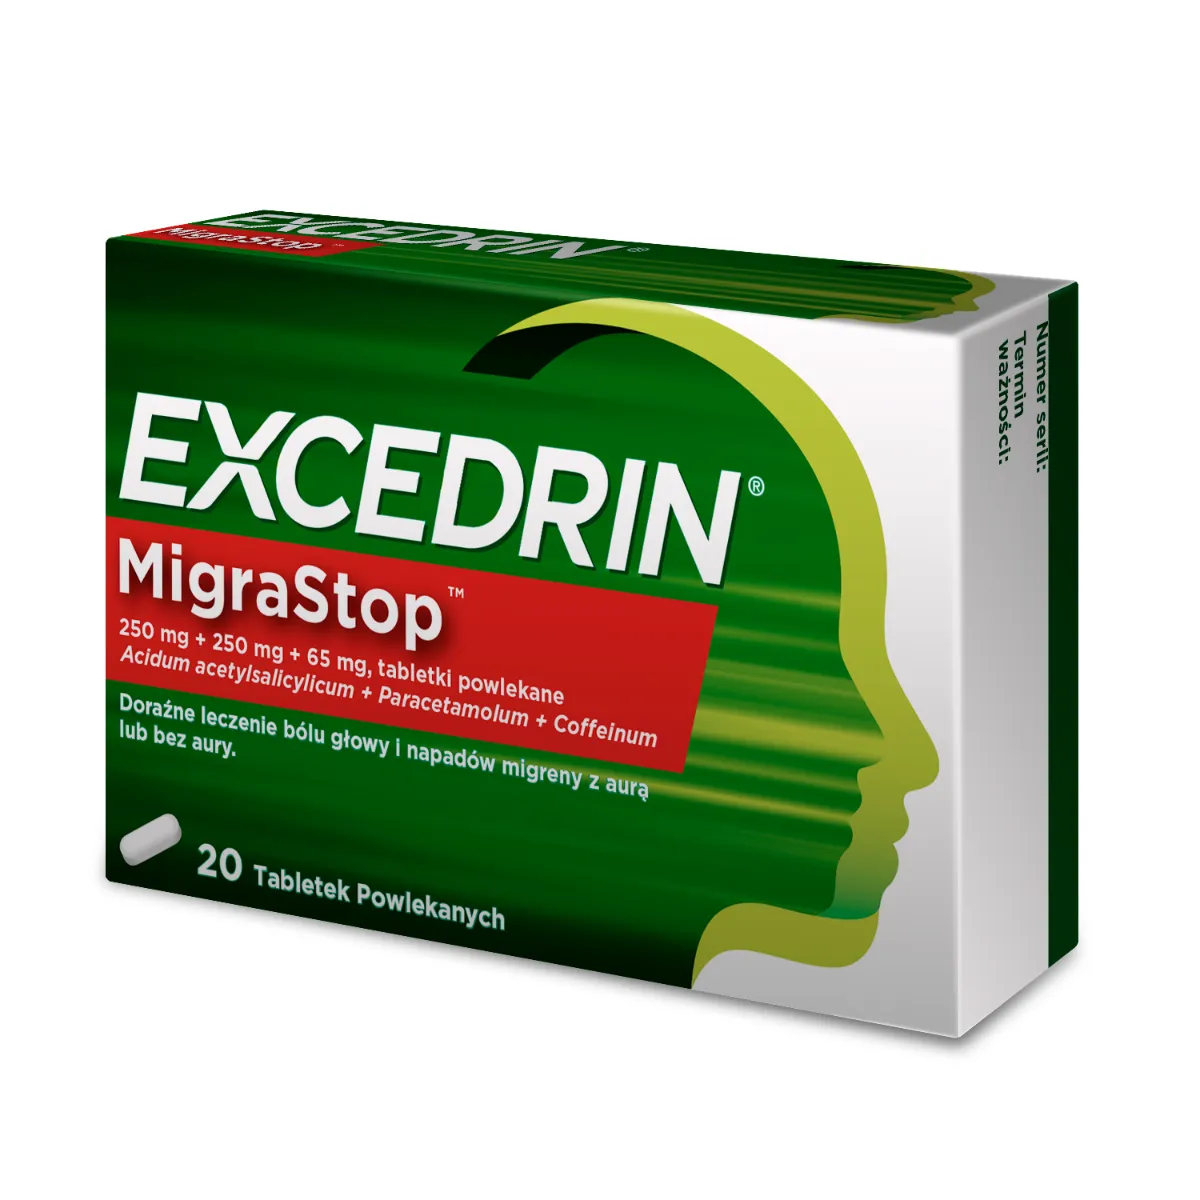 Excedrin MigraStop, 250 mg + 250 mg + 65 mg, 20 tabletek 